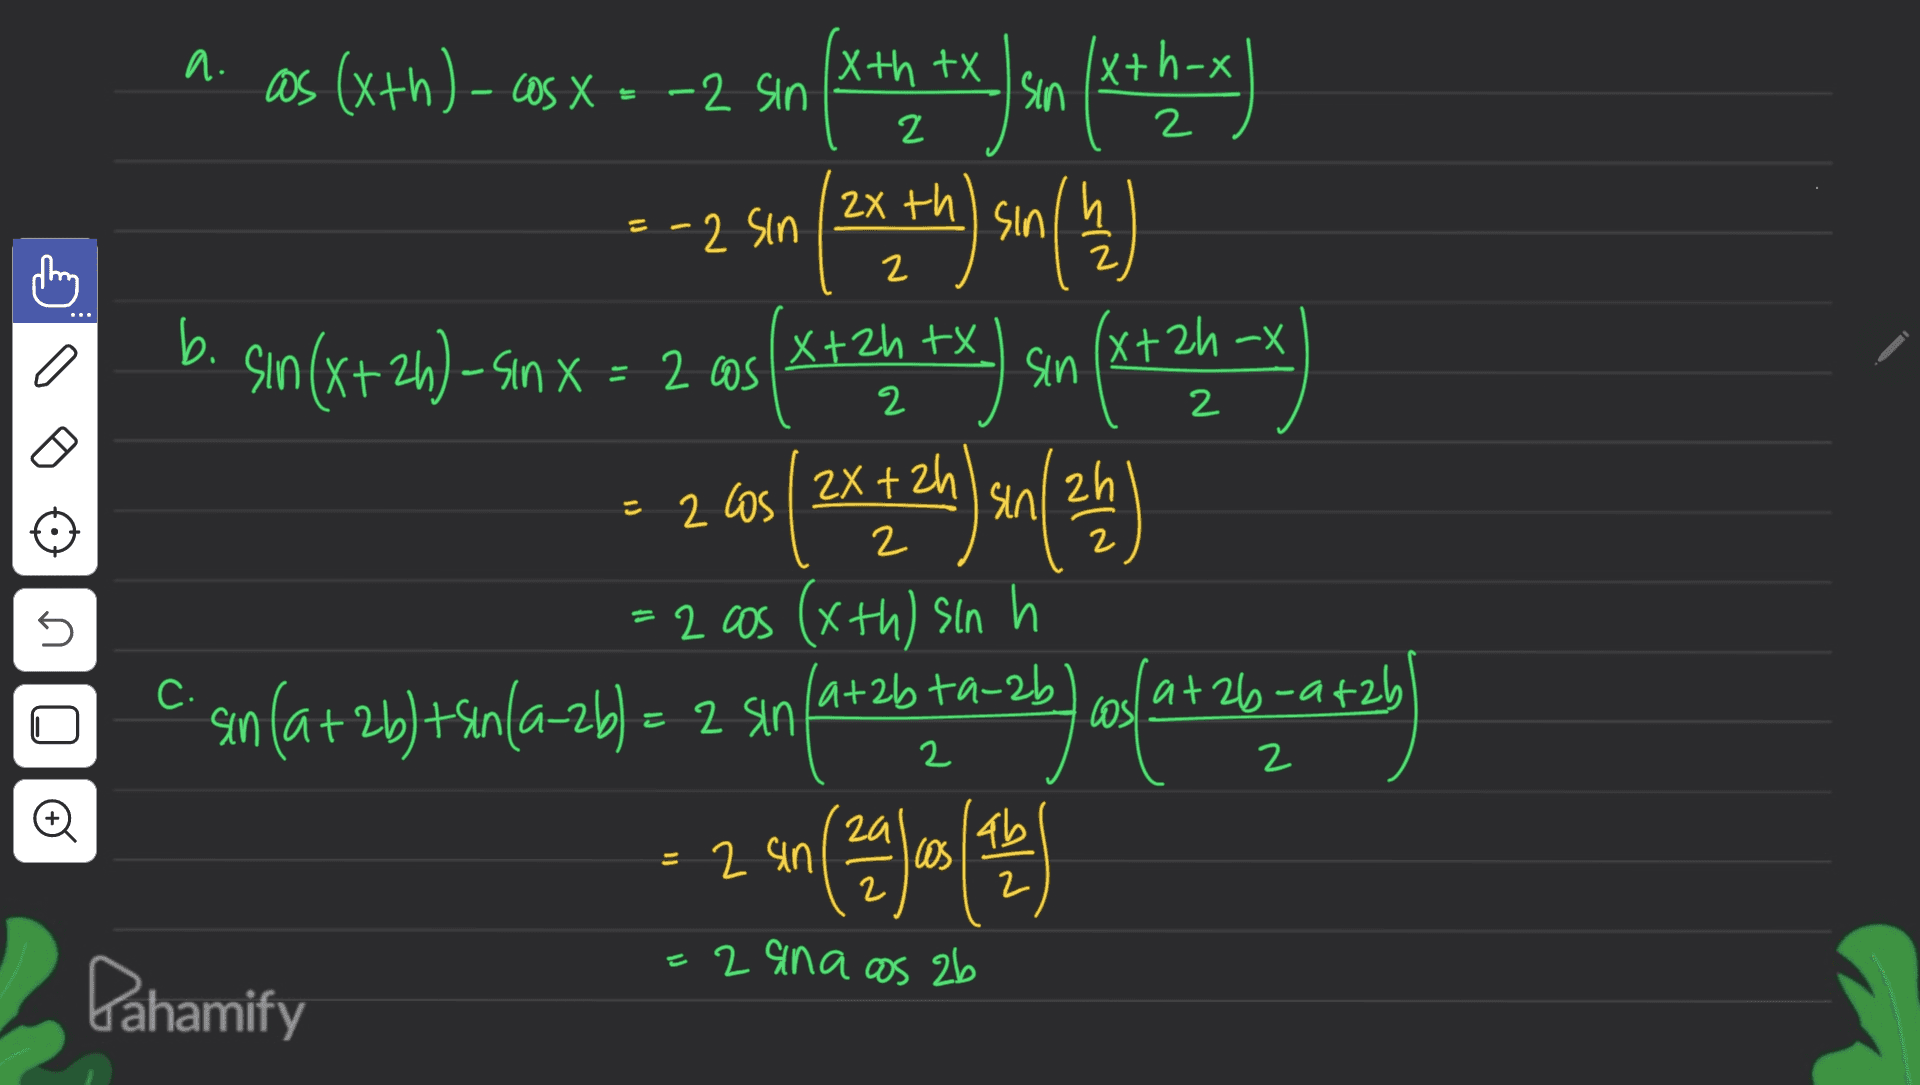 a x 2 2 th = -2 Sin 2 b. X x+x a = 20 2 cos as (x+h)- cos X = -2 sin (4th tx Jan 18th-x (x+ ( 23 ) son () sın 놀 sin (x+26)- sinx os(x+2h +x) sin (x+2h-x ${2x22h) sin(24) zh/ = 2 cos (xth) sin h sin(a+2b)+sin(a-2b) = 2 sin in (at 26 ta-2b ang at 20-atz an (29/10/17 = 2 Los 5 C 26 2 © - 2 sin ( = 2 ana as 2b Pahamify 